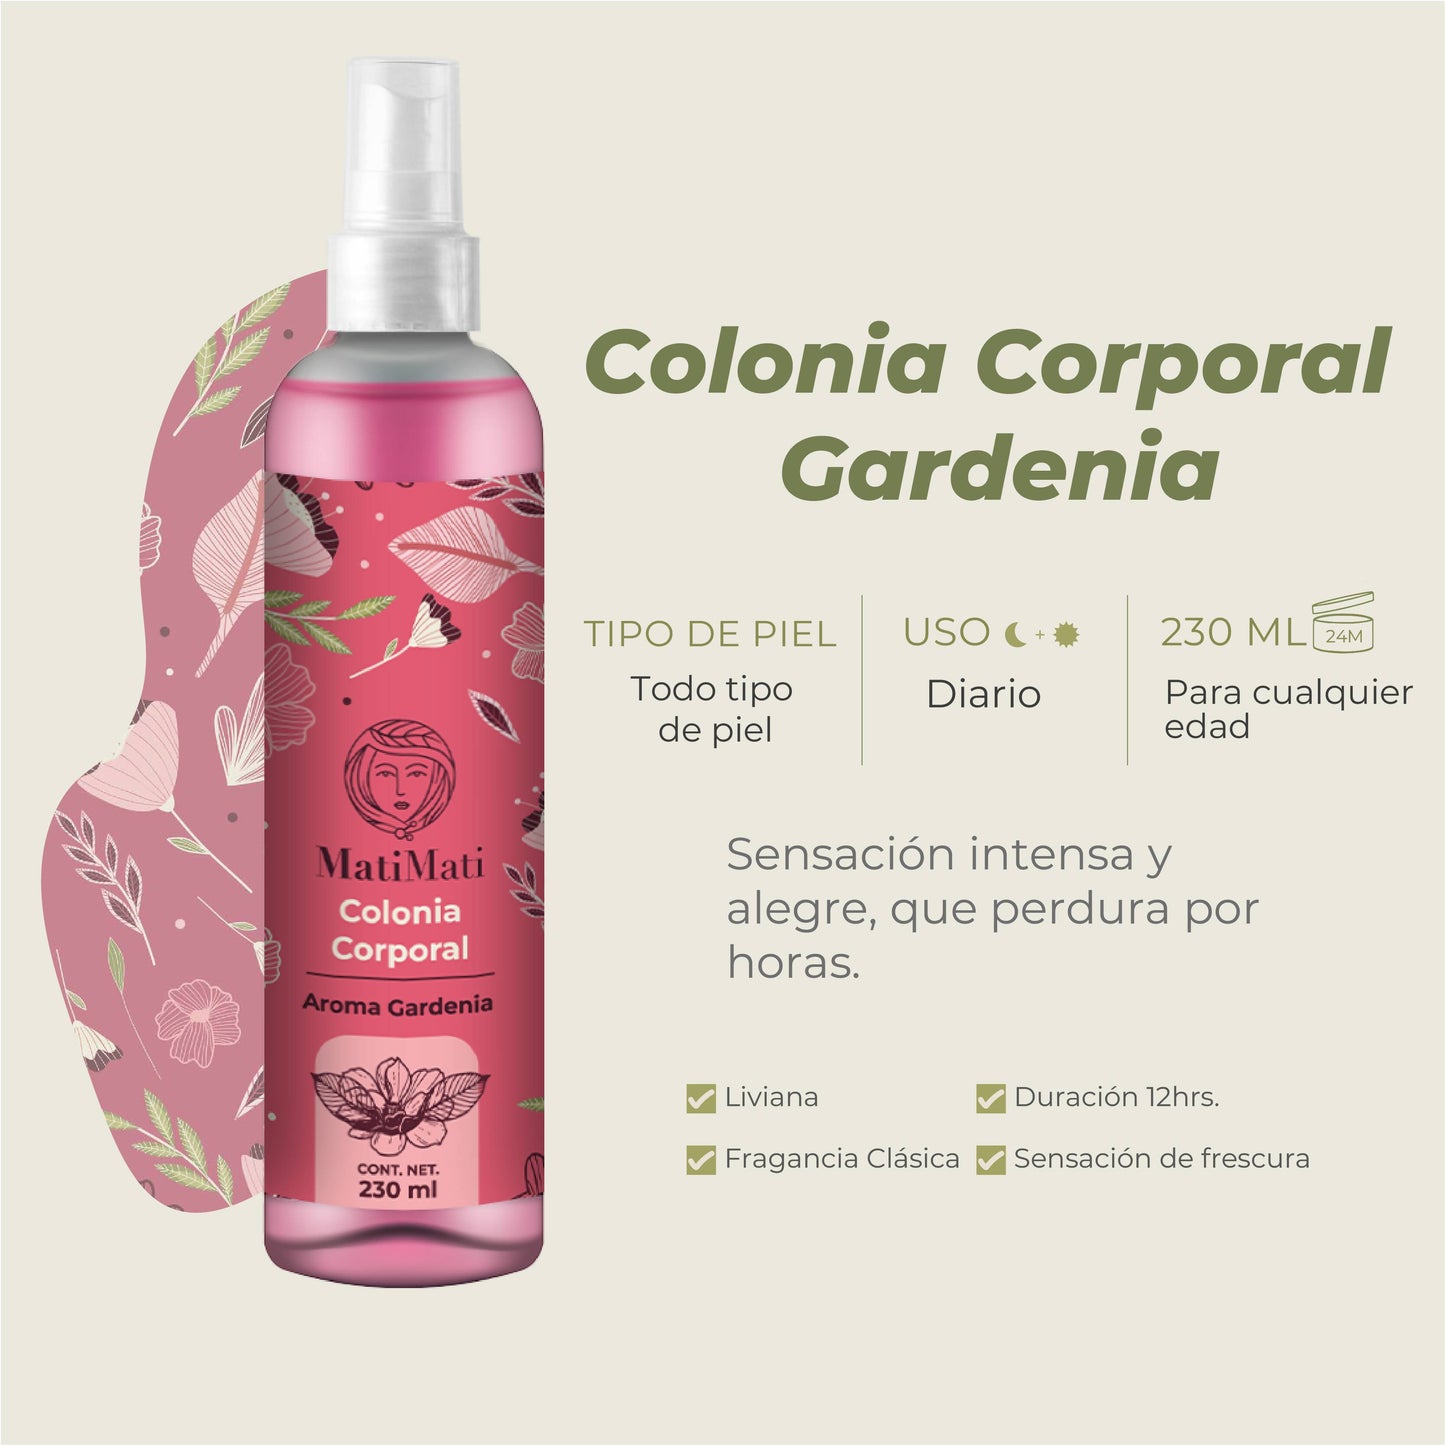 Colonia Corporal Gardenia